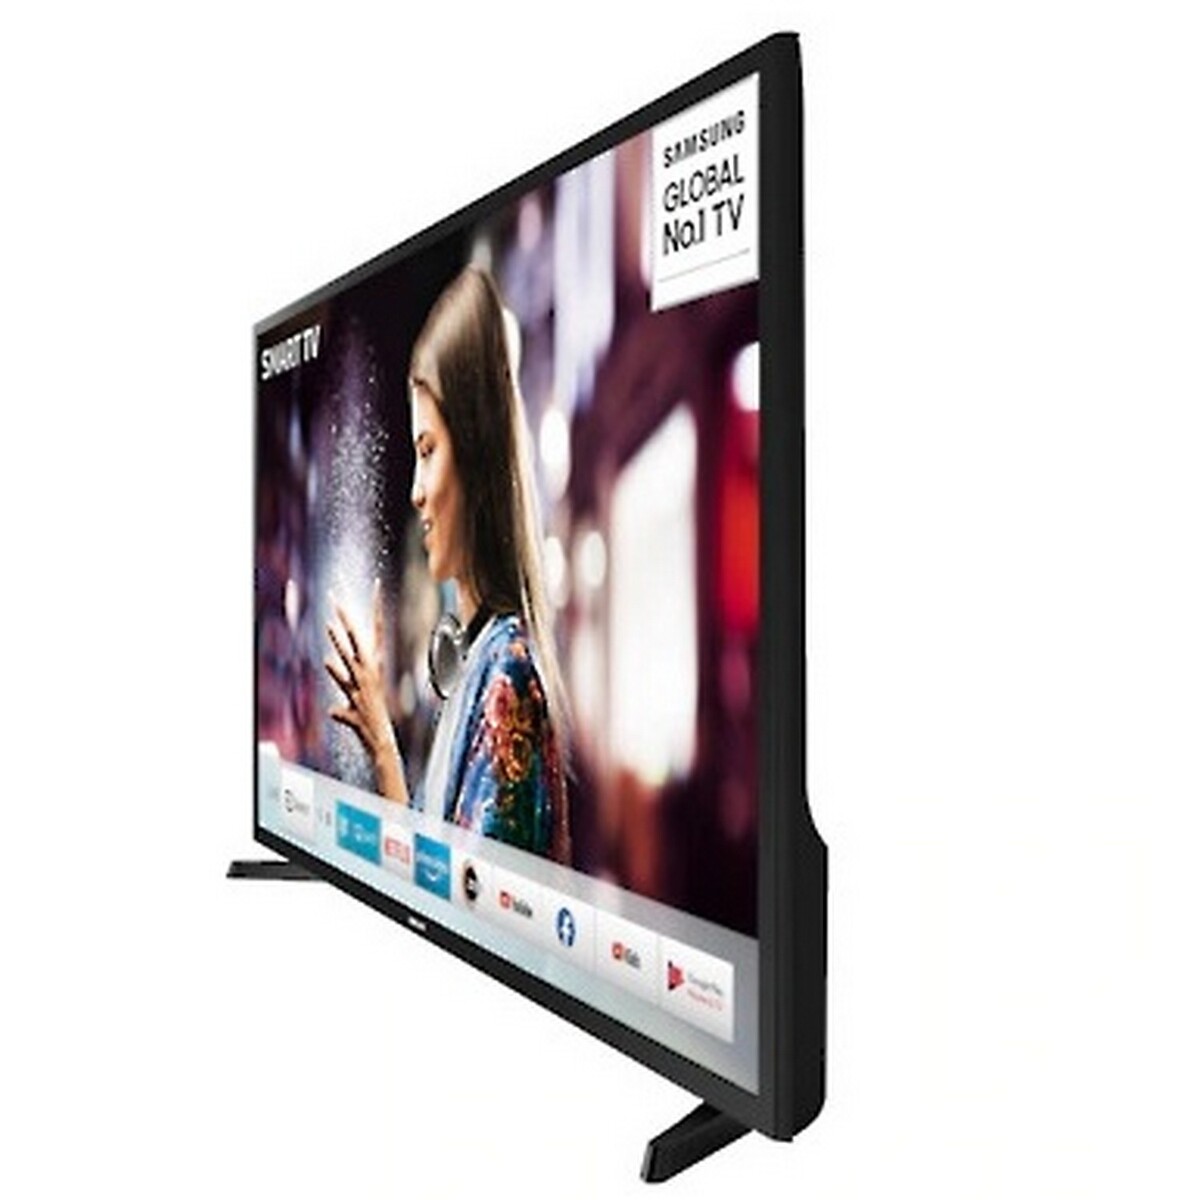 Samsung Full HD LED Smart TV UA43T5770 43"